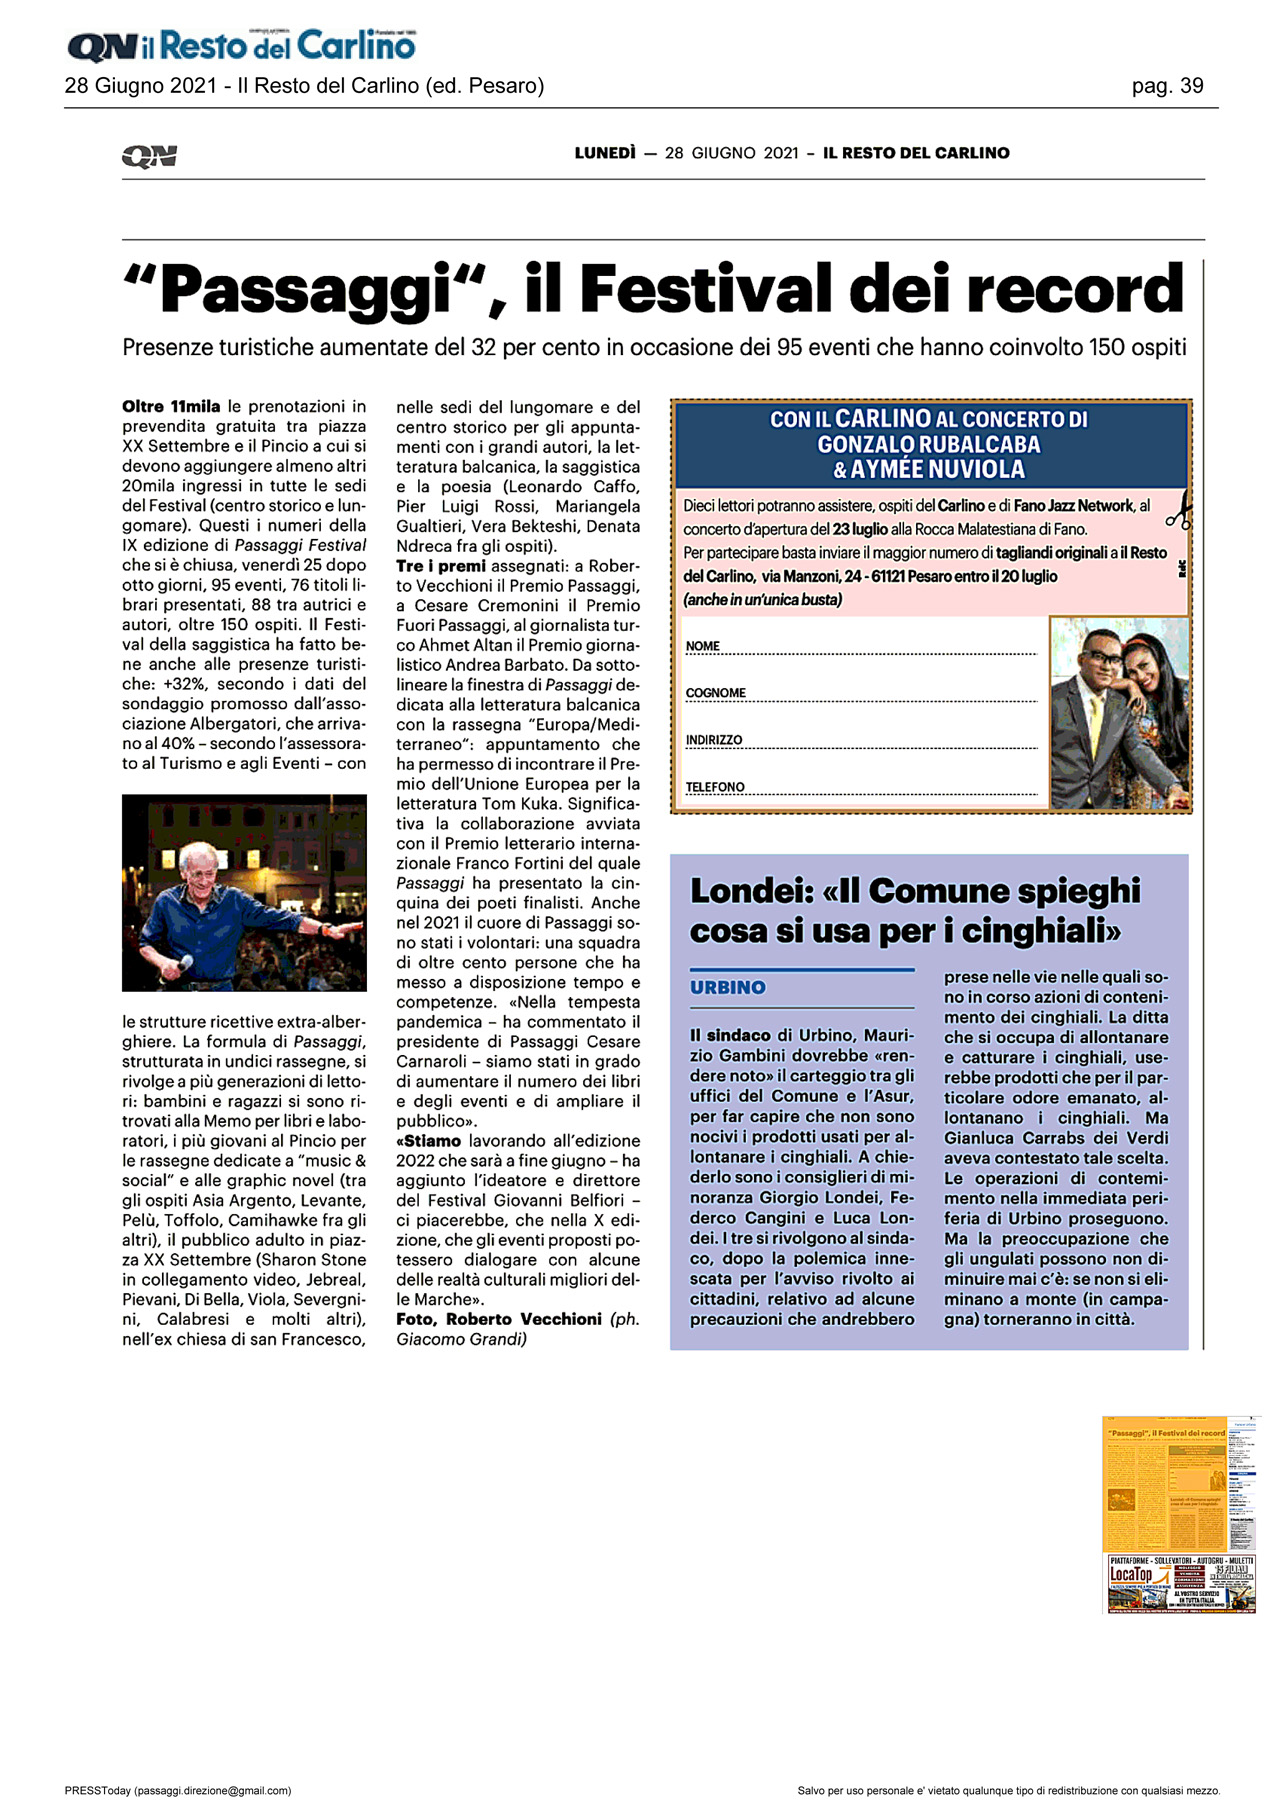 Il_Resto_del_Carlino_passaggi-il-festival-dei-record